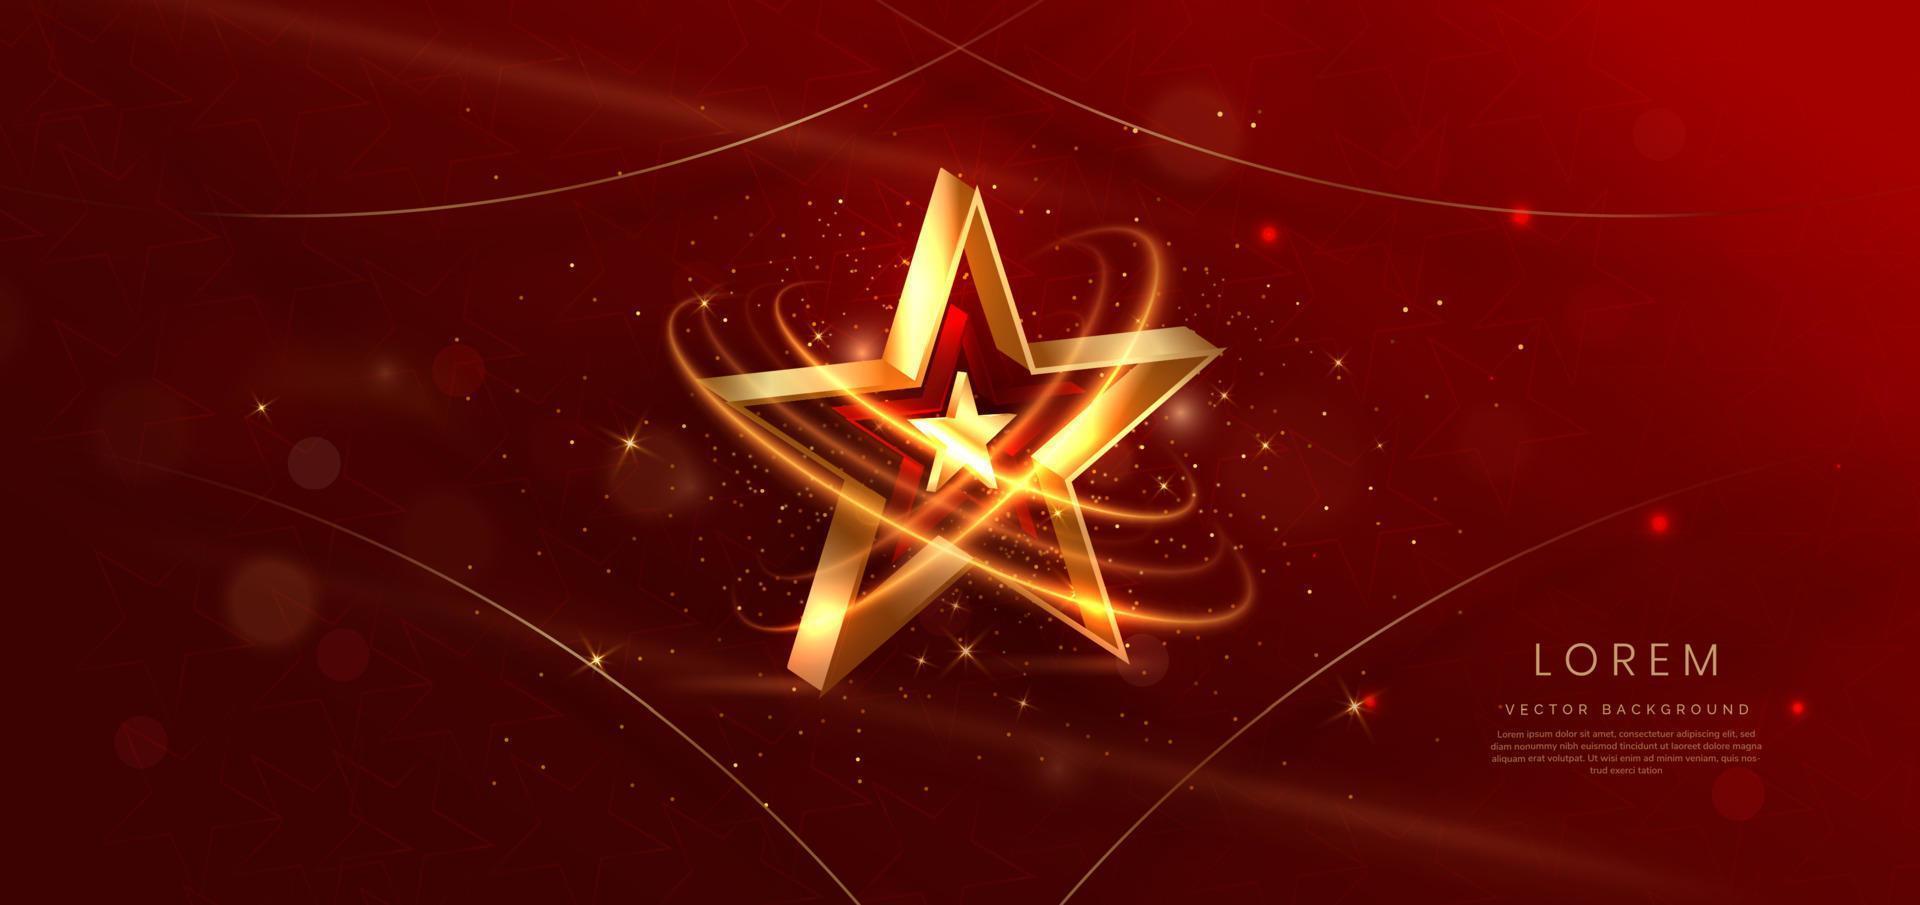 Estrella dorada 3d con fondo dorado sobre rojo con efecto de iluminación y brillo. diseño de premio premium de lujo de plantilla. vector